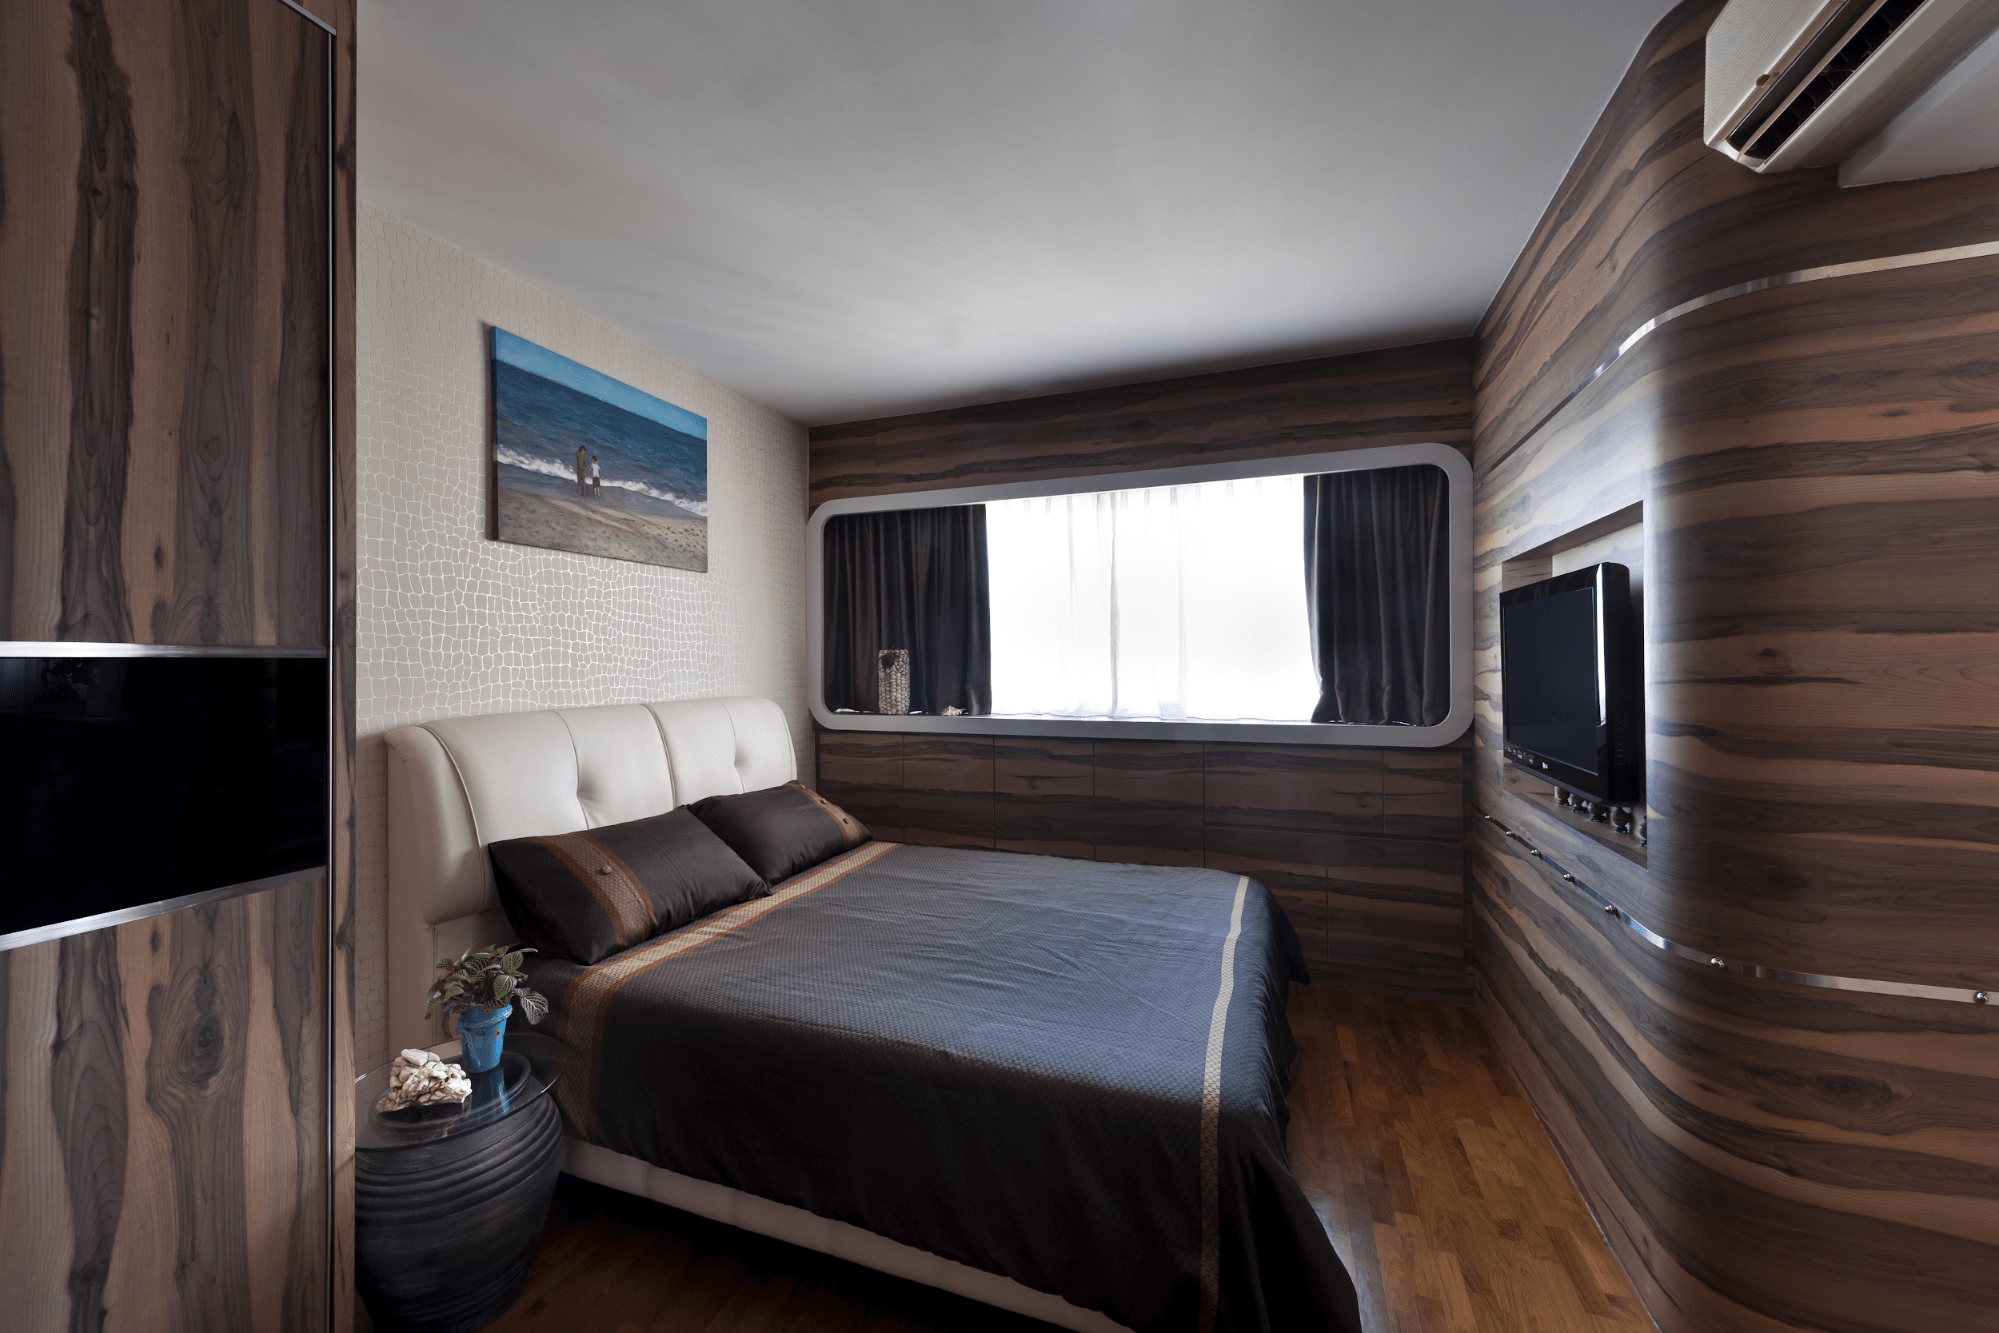 HDB renovation idea for Boat-inspired bedroom